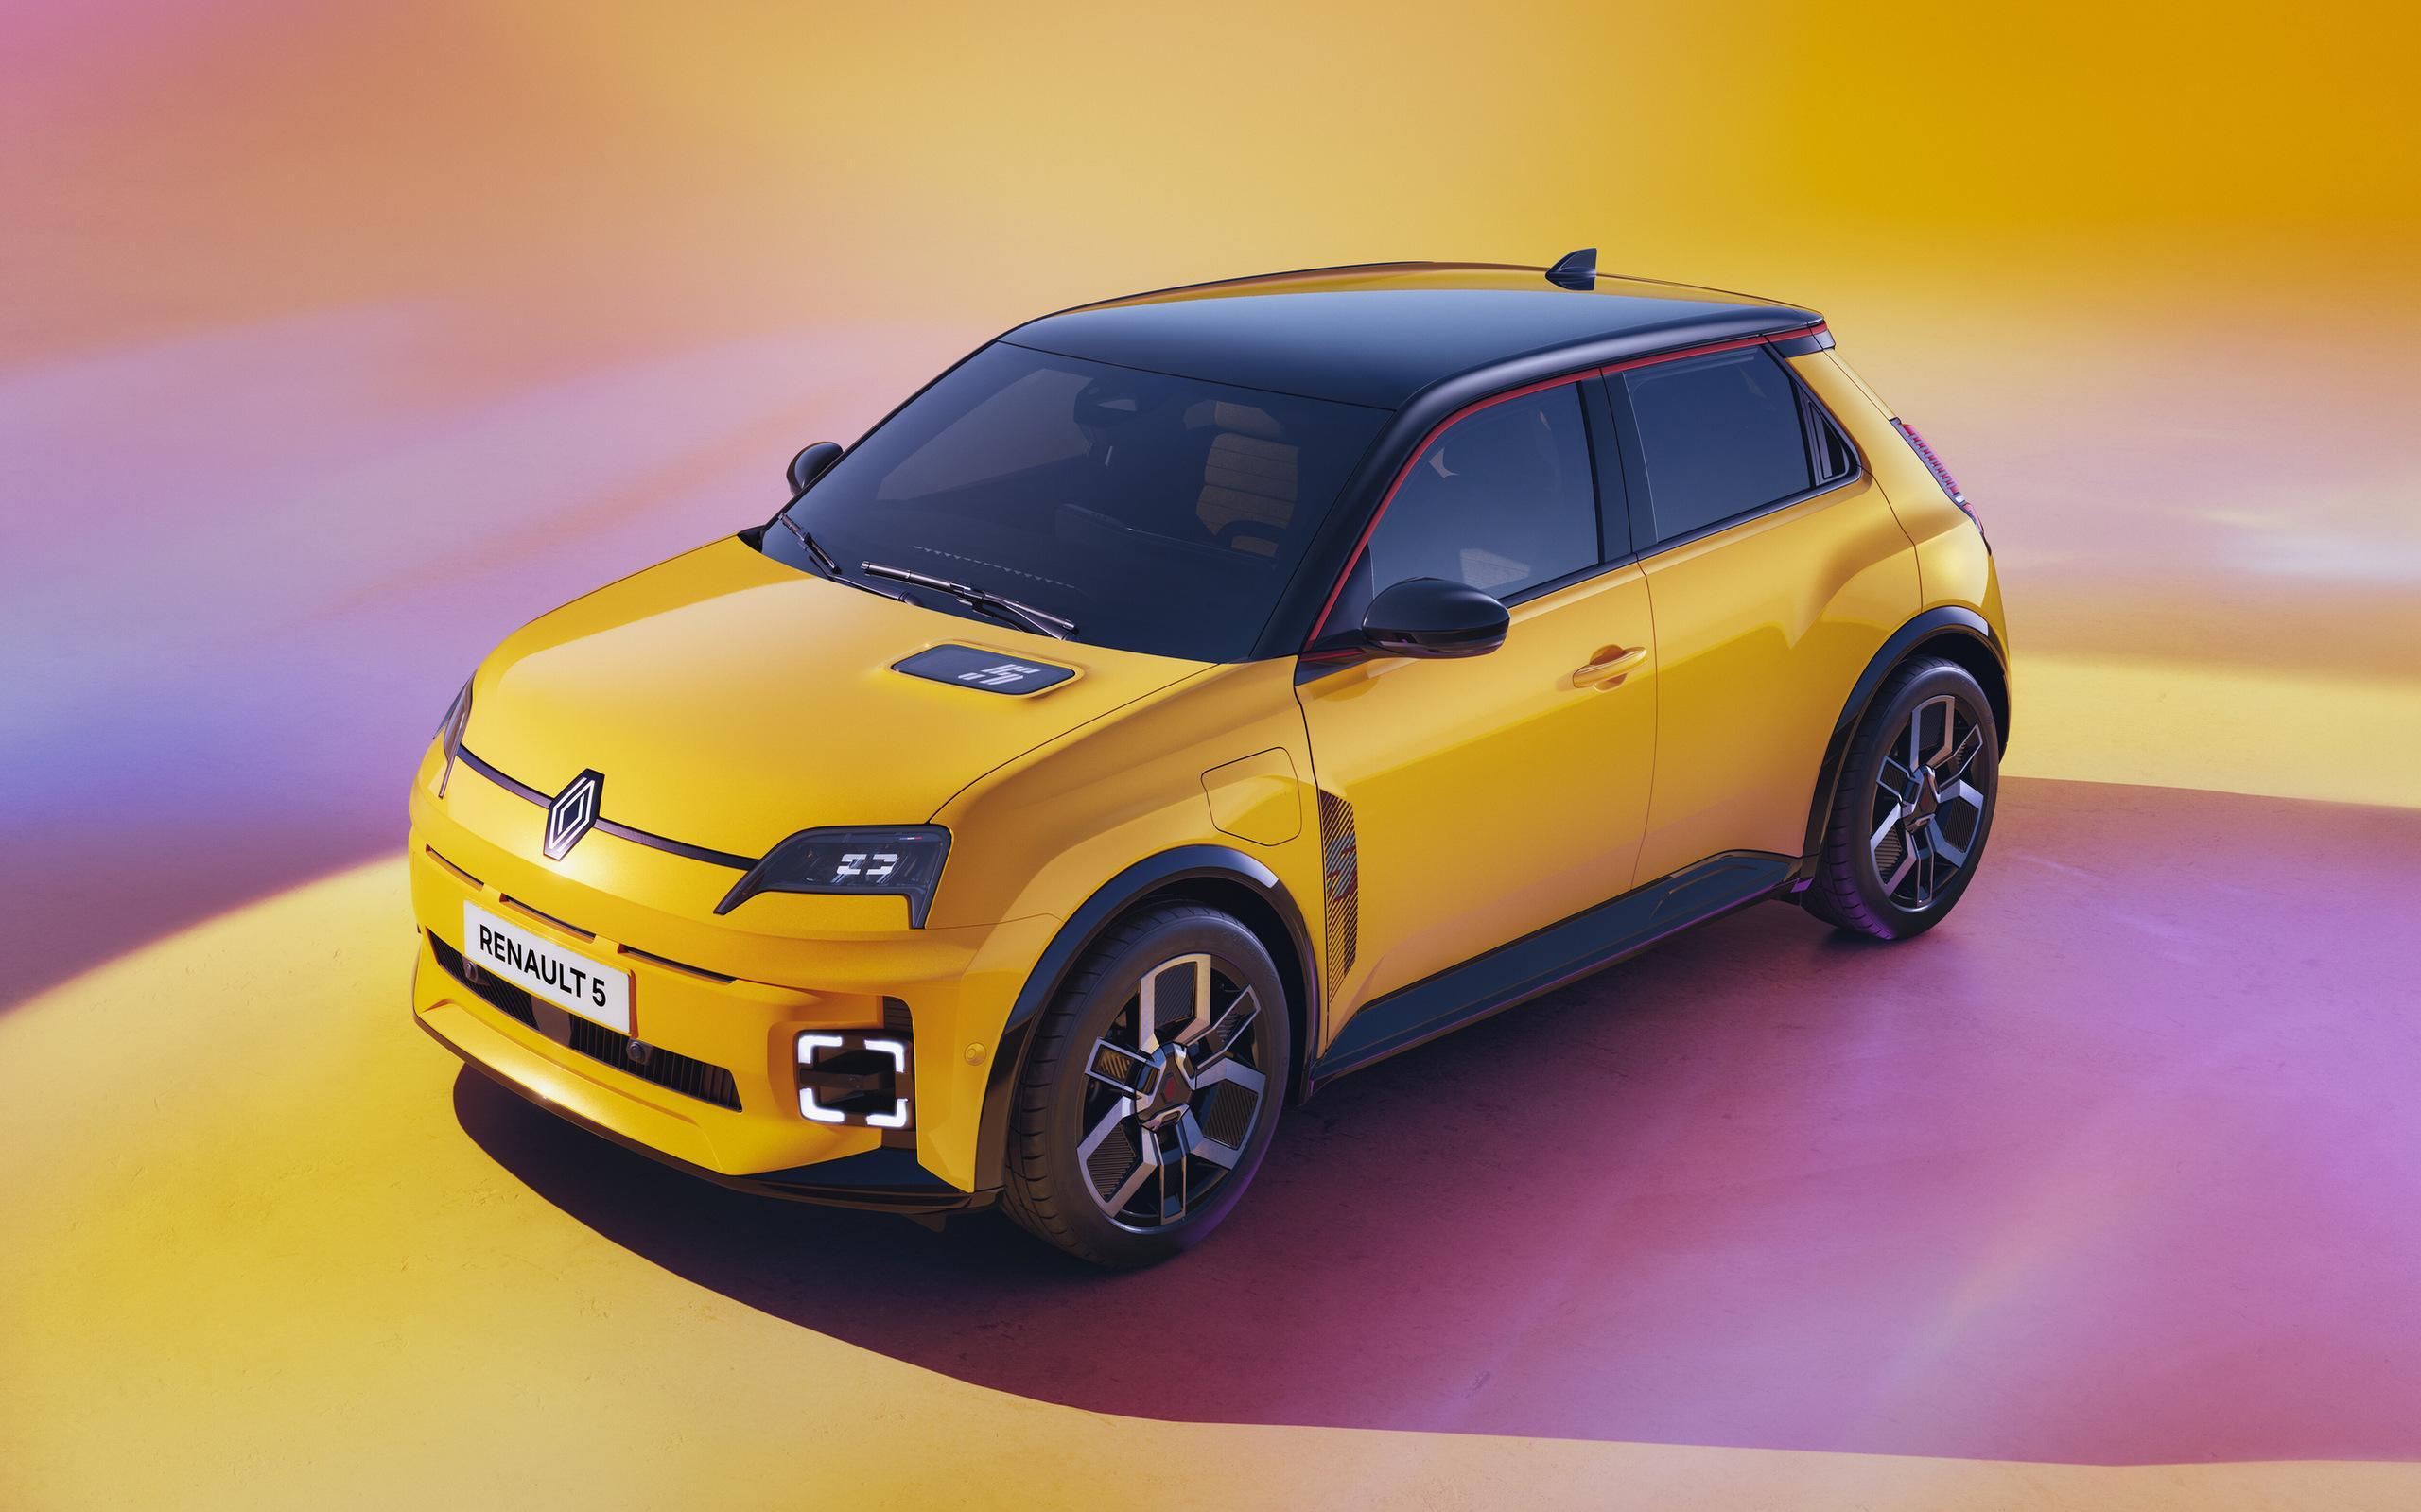 Renault 5 E-Tech Electric, które wejdzie na rynek z cenami od 25 tys. euro, ma być przeciwwagą nie tylko dla dużo droższych modeli w segmencie BEV, ale również dla oferty, którą z myślą o rynku europejskim szykują koncerny zza Wielkiego Muru.